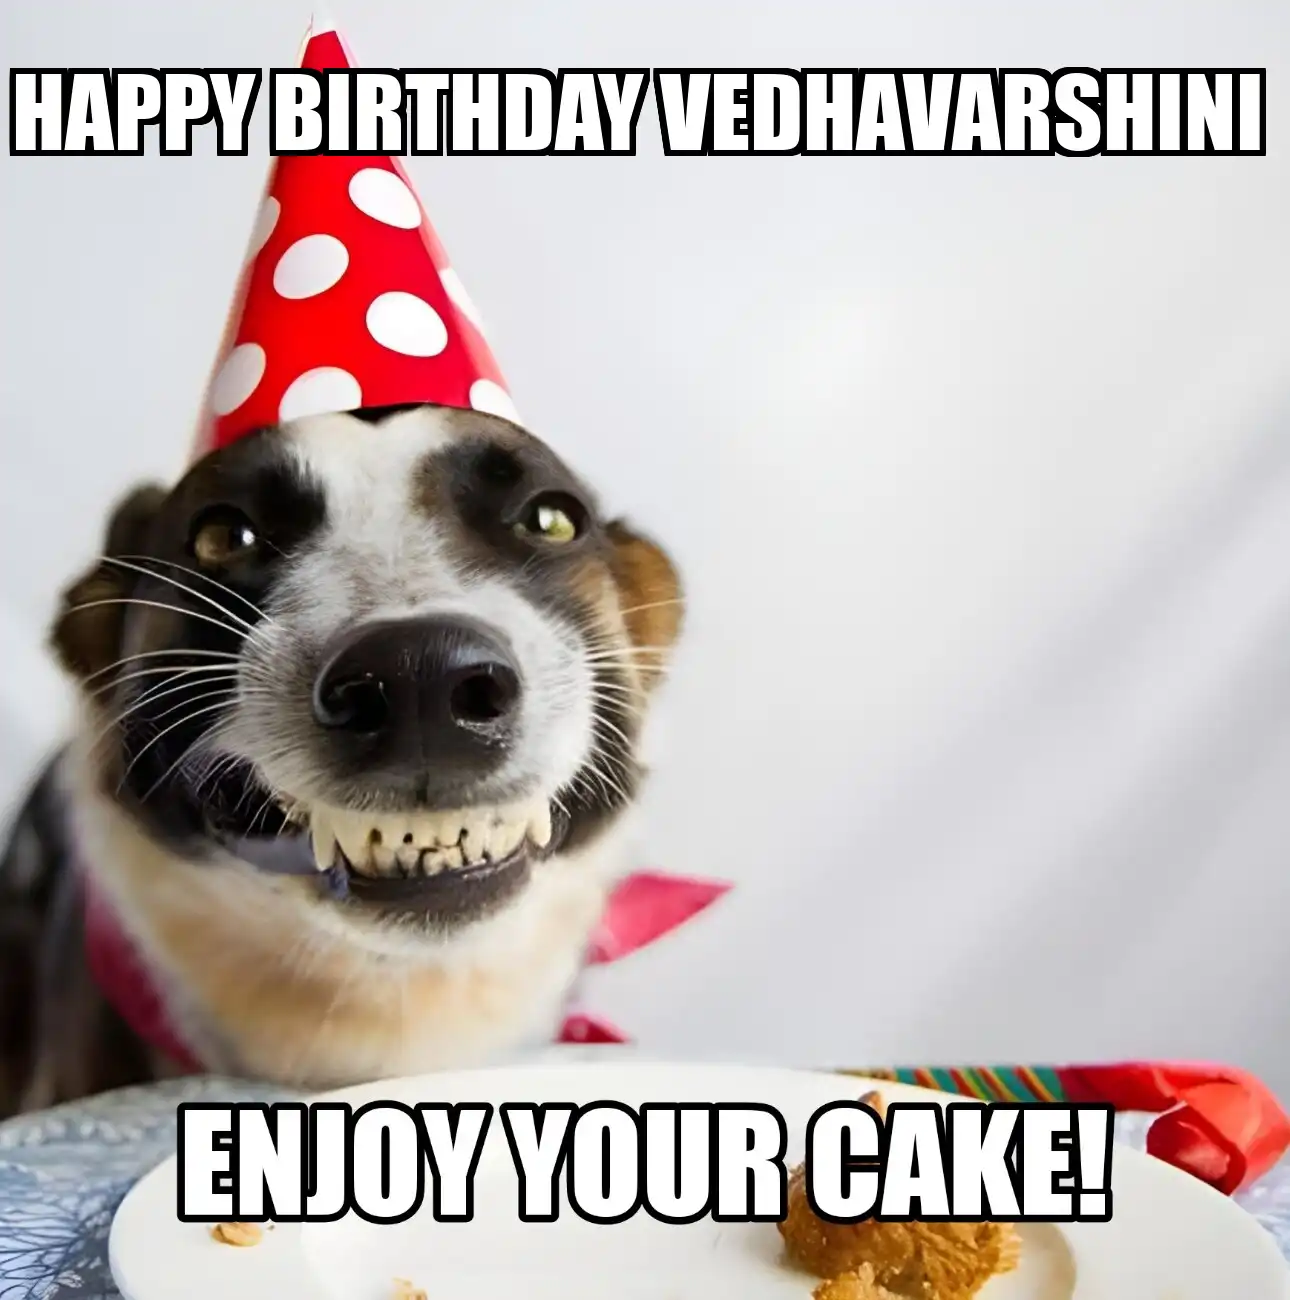 Happy Birthday Vedhavarshini Enjoy Your Cake Dog Meme